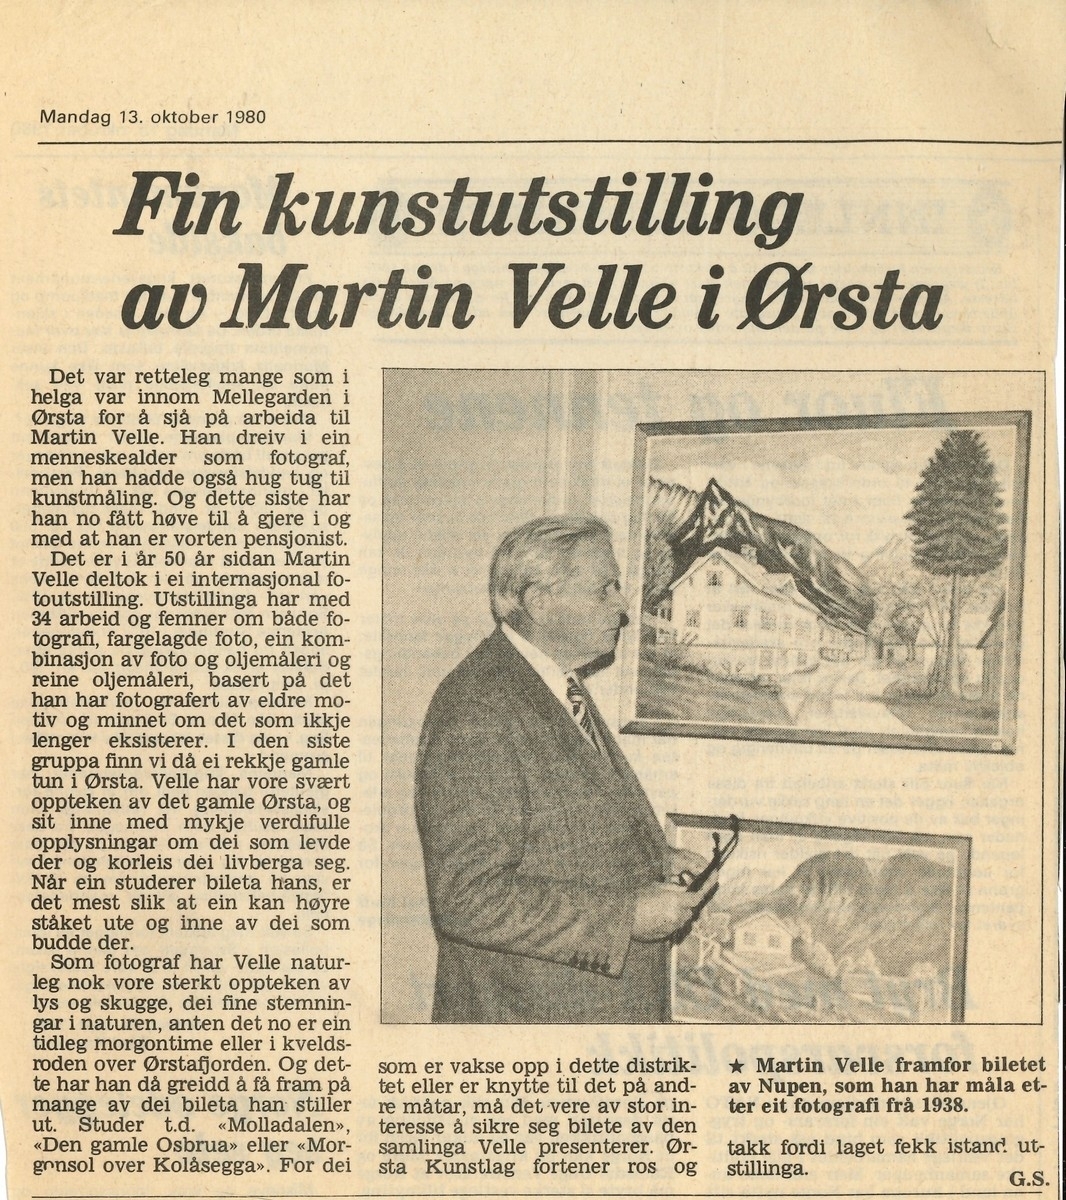 To avisartiklar i Sunnmørsposten om Martin Velle si kunstutstilling i Ørsta i 1980. Artiklane har overskriftene: 1) Martin Velle opnar biletutstilling i Ørsta. 2) Fin kunstutstilling av Martin Velle i Ørsta. Avisene er datert 11. og 13. oktober 1980.